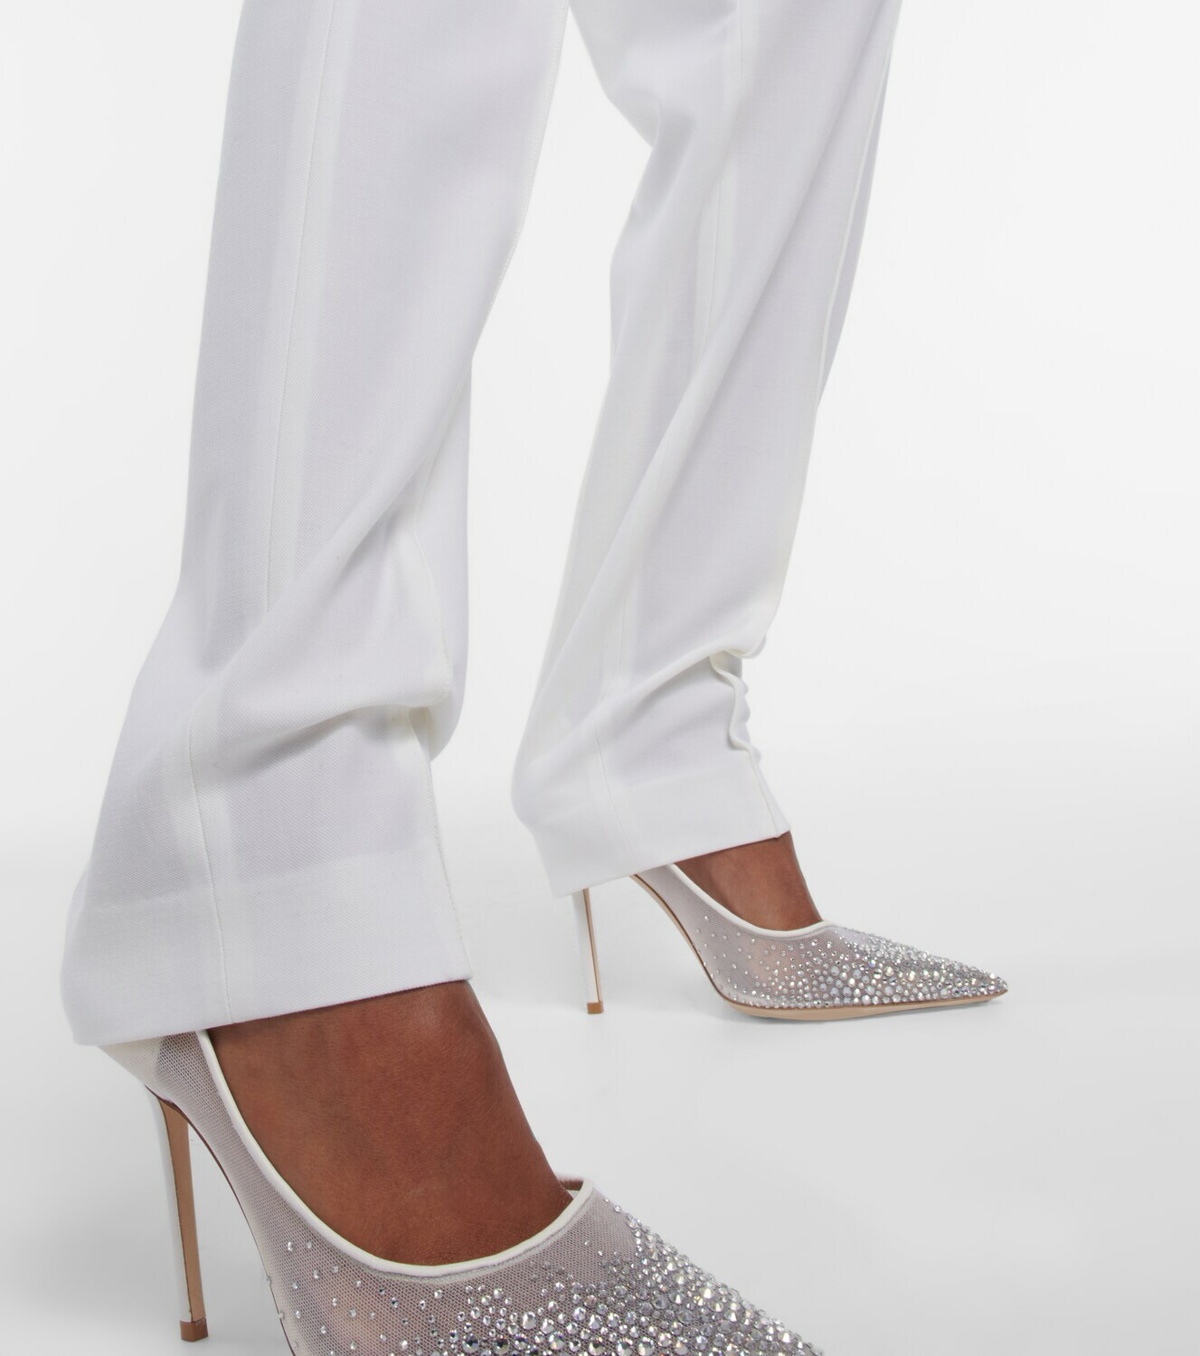 Bridal tulle tights in white - Nensi Dojaka